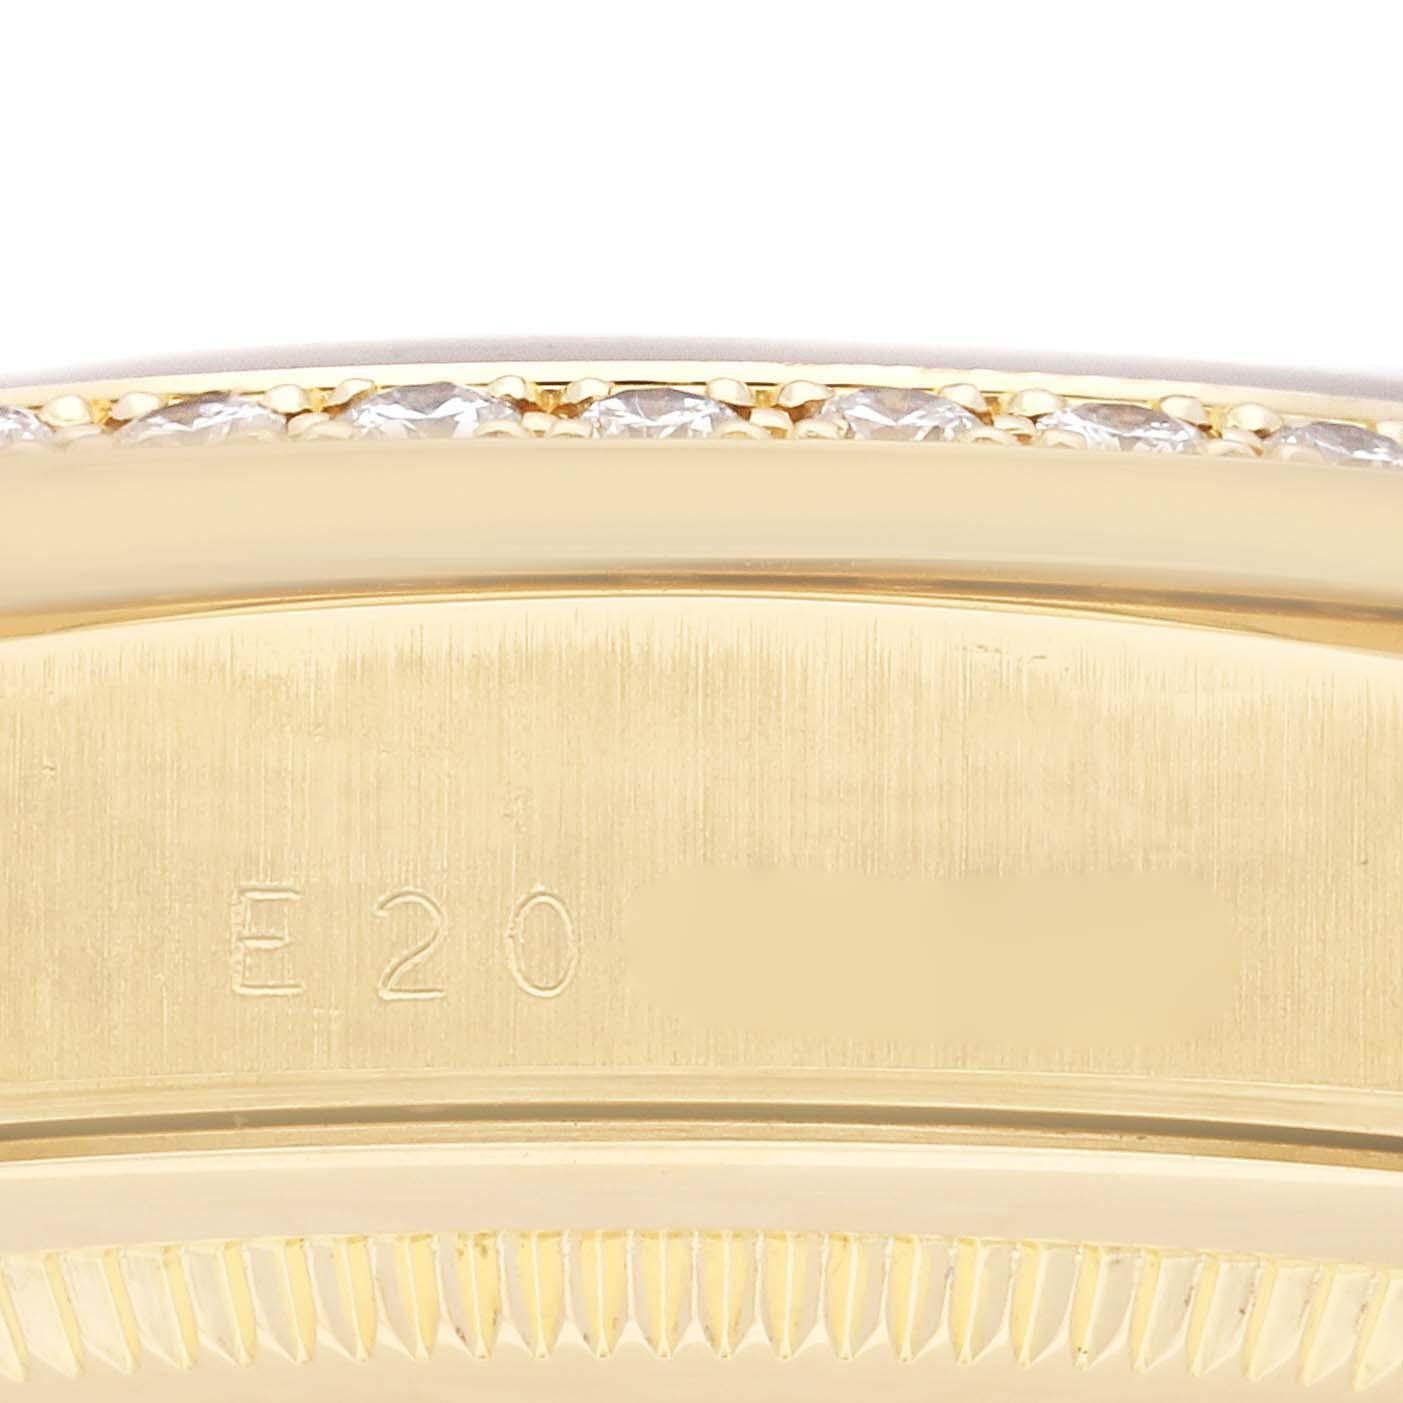 Rolex President Day Date 36mm Yellow Gold Black Dial Diamond Mens Watch 18348. Mouvement à remontage automatique certifié chronomètre. Boîtier en or jaune 18 carats de 36 mm de diamètre. Logo Rolex sur la couronne. Lunette originale d'usine Rolex en